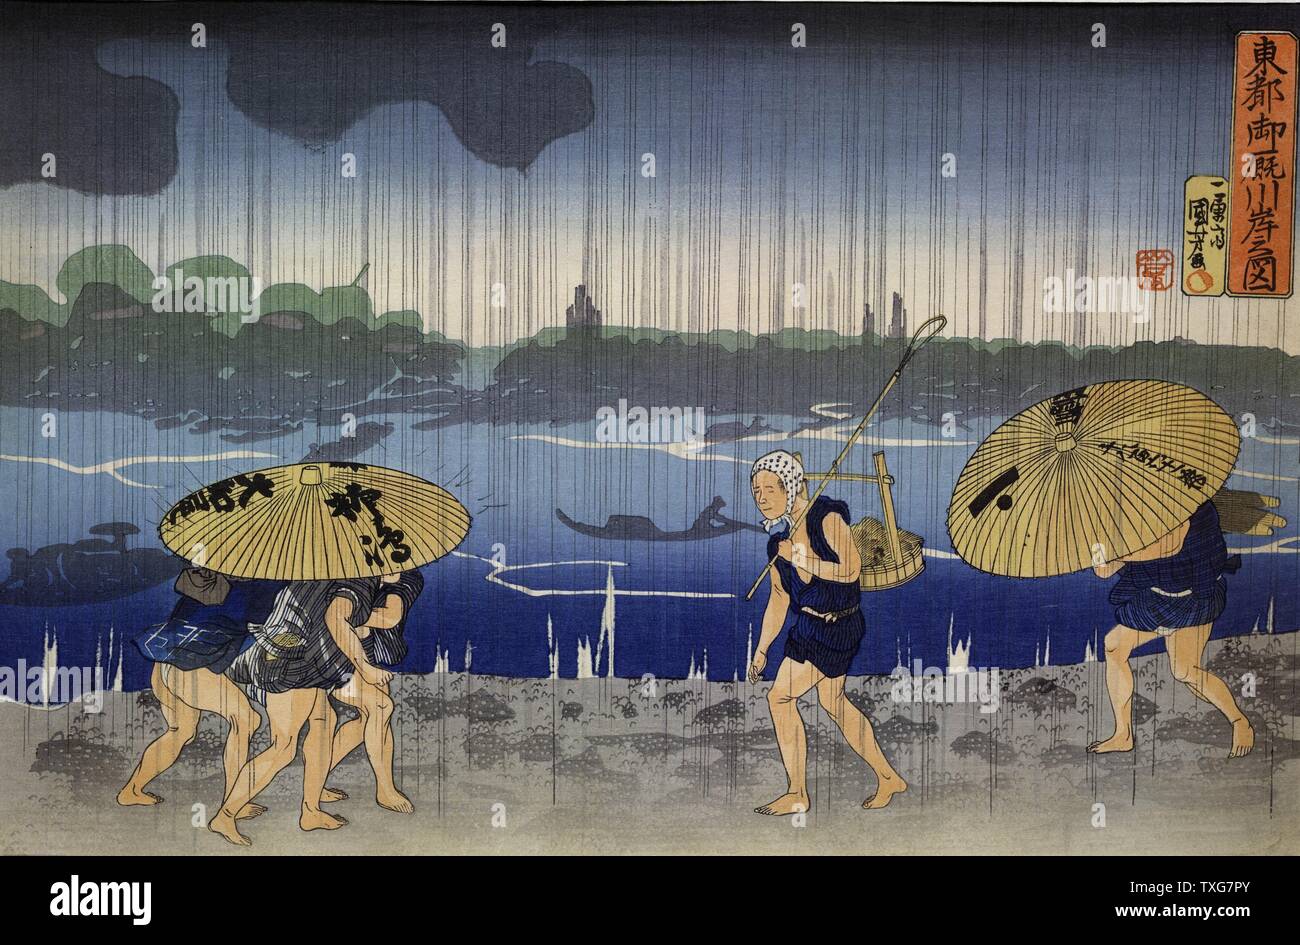 Utagawa Kuniyoshi école japonaise sur la rive de la rivière Samida dans Mimayagashi - hommes marchant pieds nus par forte pluie. Des personnages louches de bateaux sur le fleuve sur bois Banque D'Images